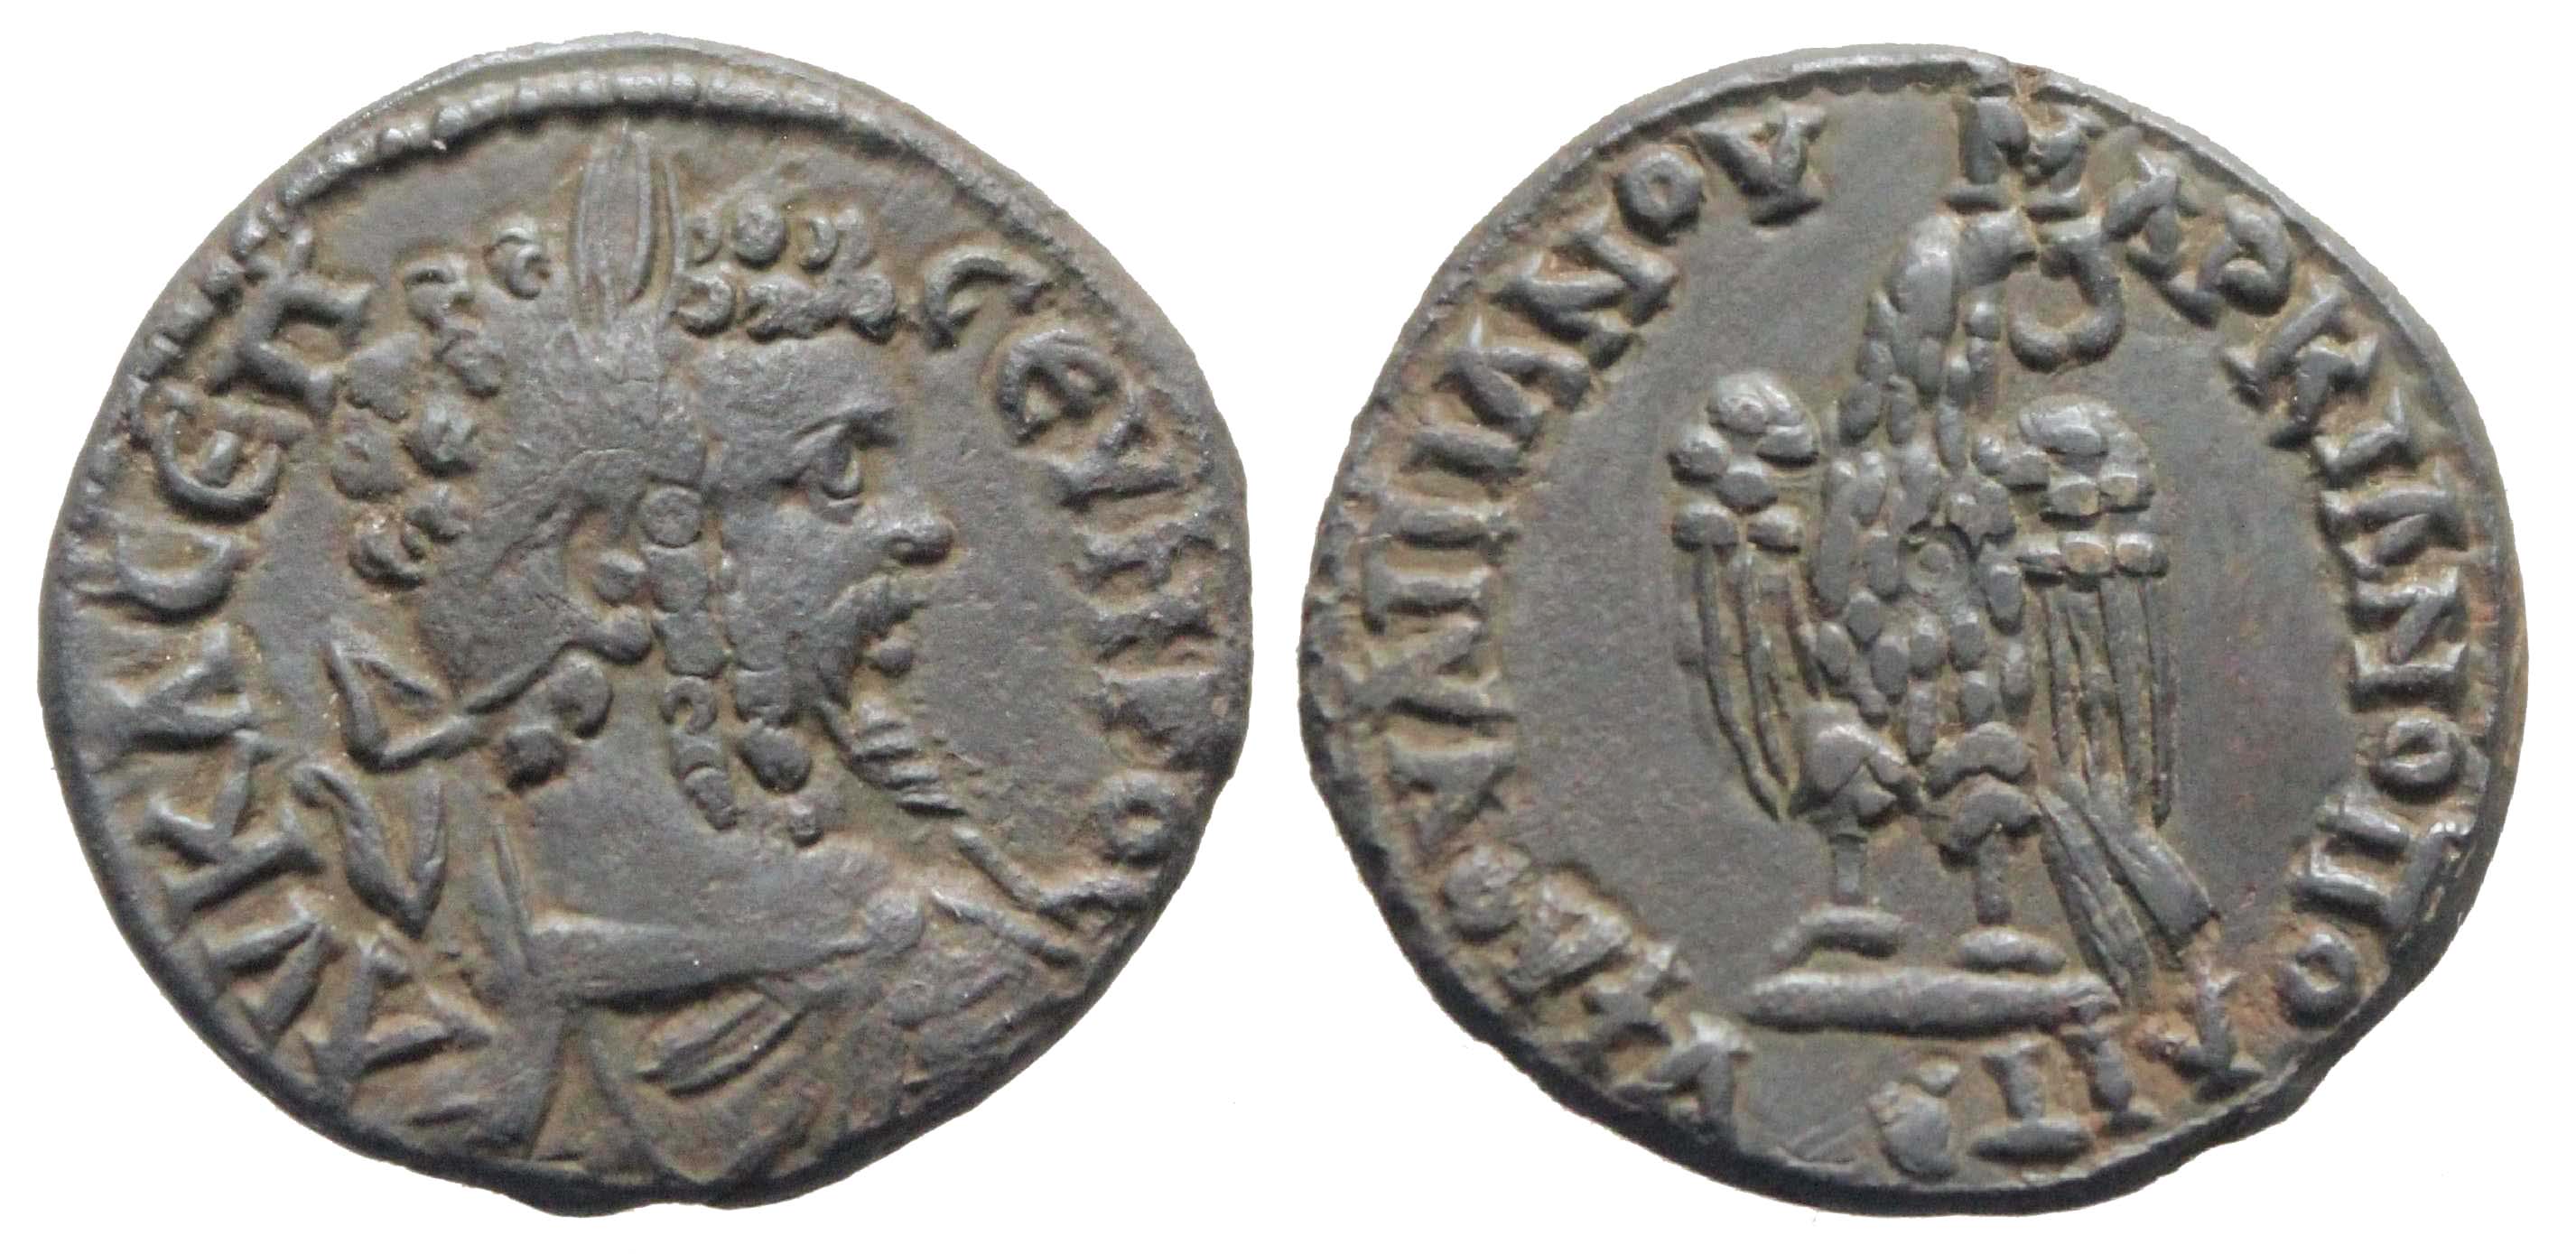 6210 Marcianopolis Moesia Inferior Septimius Severus AE